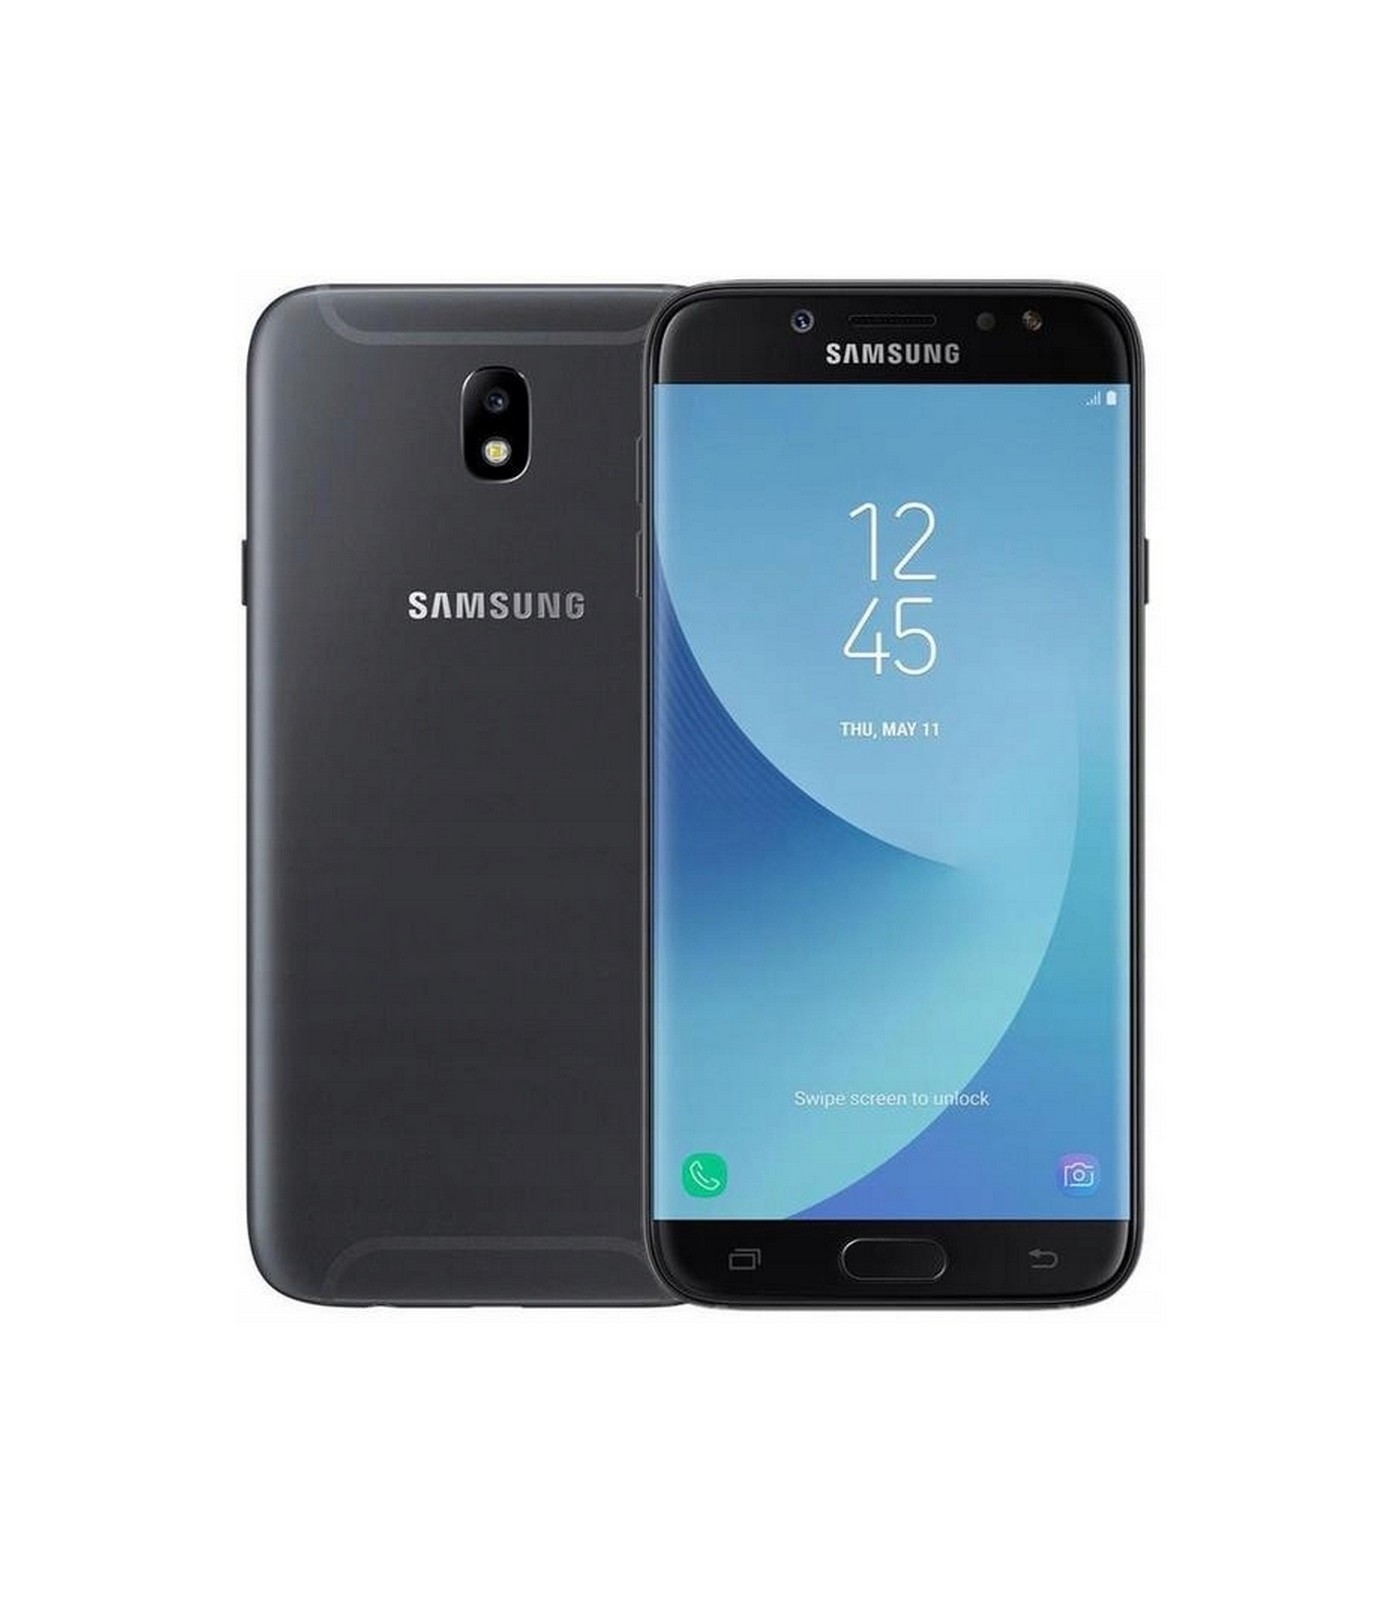 Poleasingowy smartfon Samsung Galaxy J7 2017 Dual Sim w Klasie A.